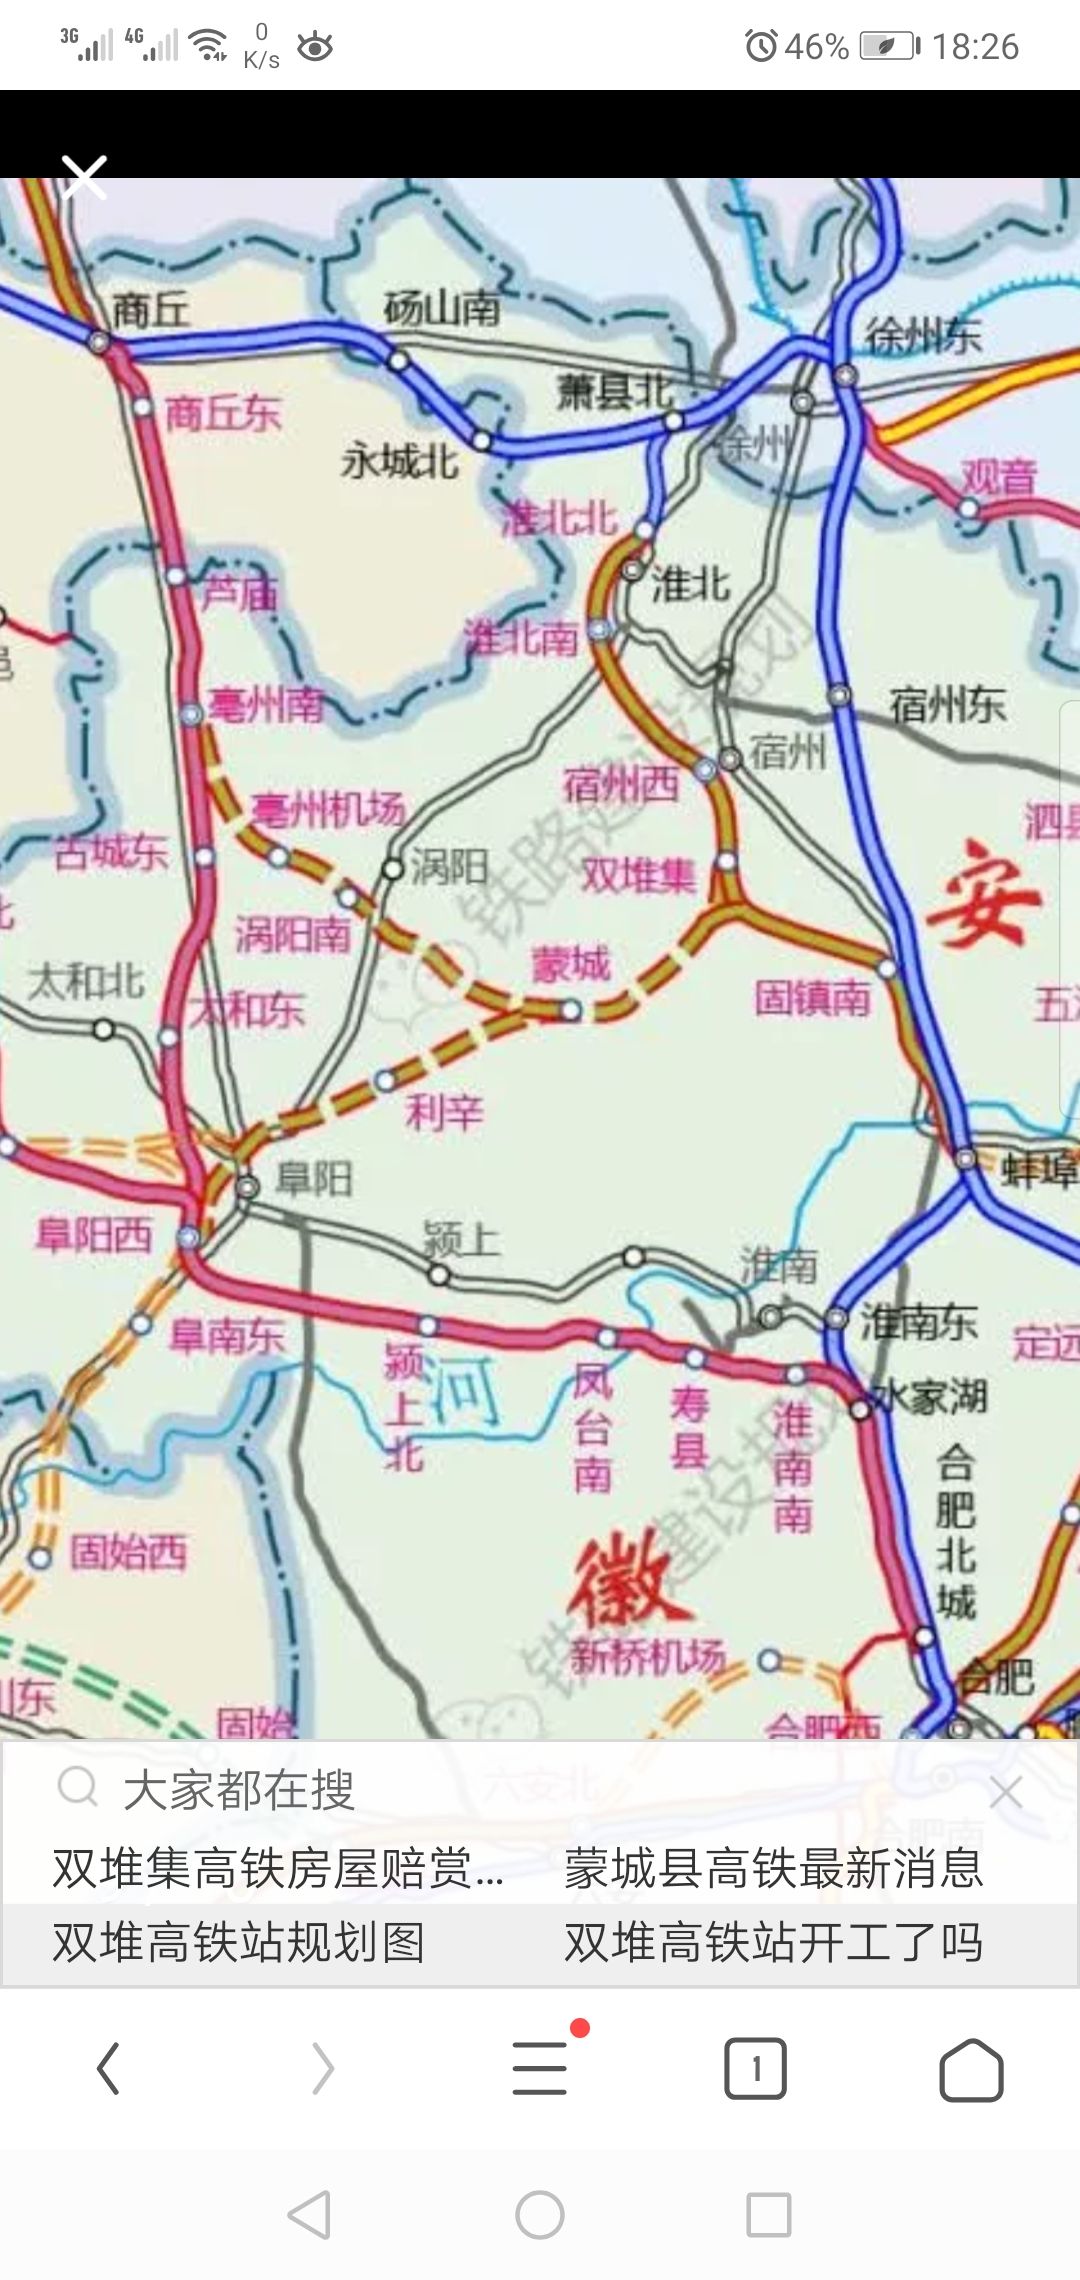 好消息:高铁淮宿蚌城际铁路,位于安徽省北部,线路起自